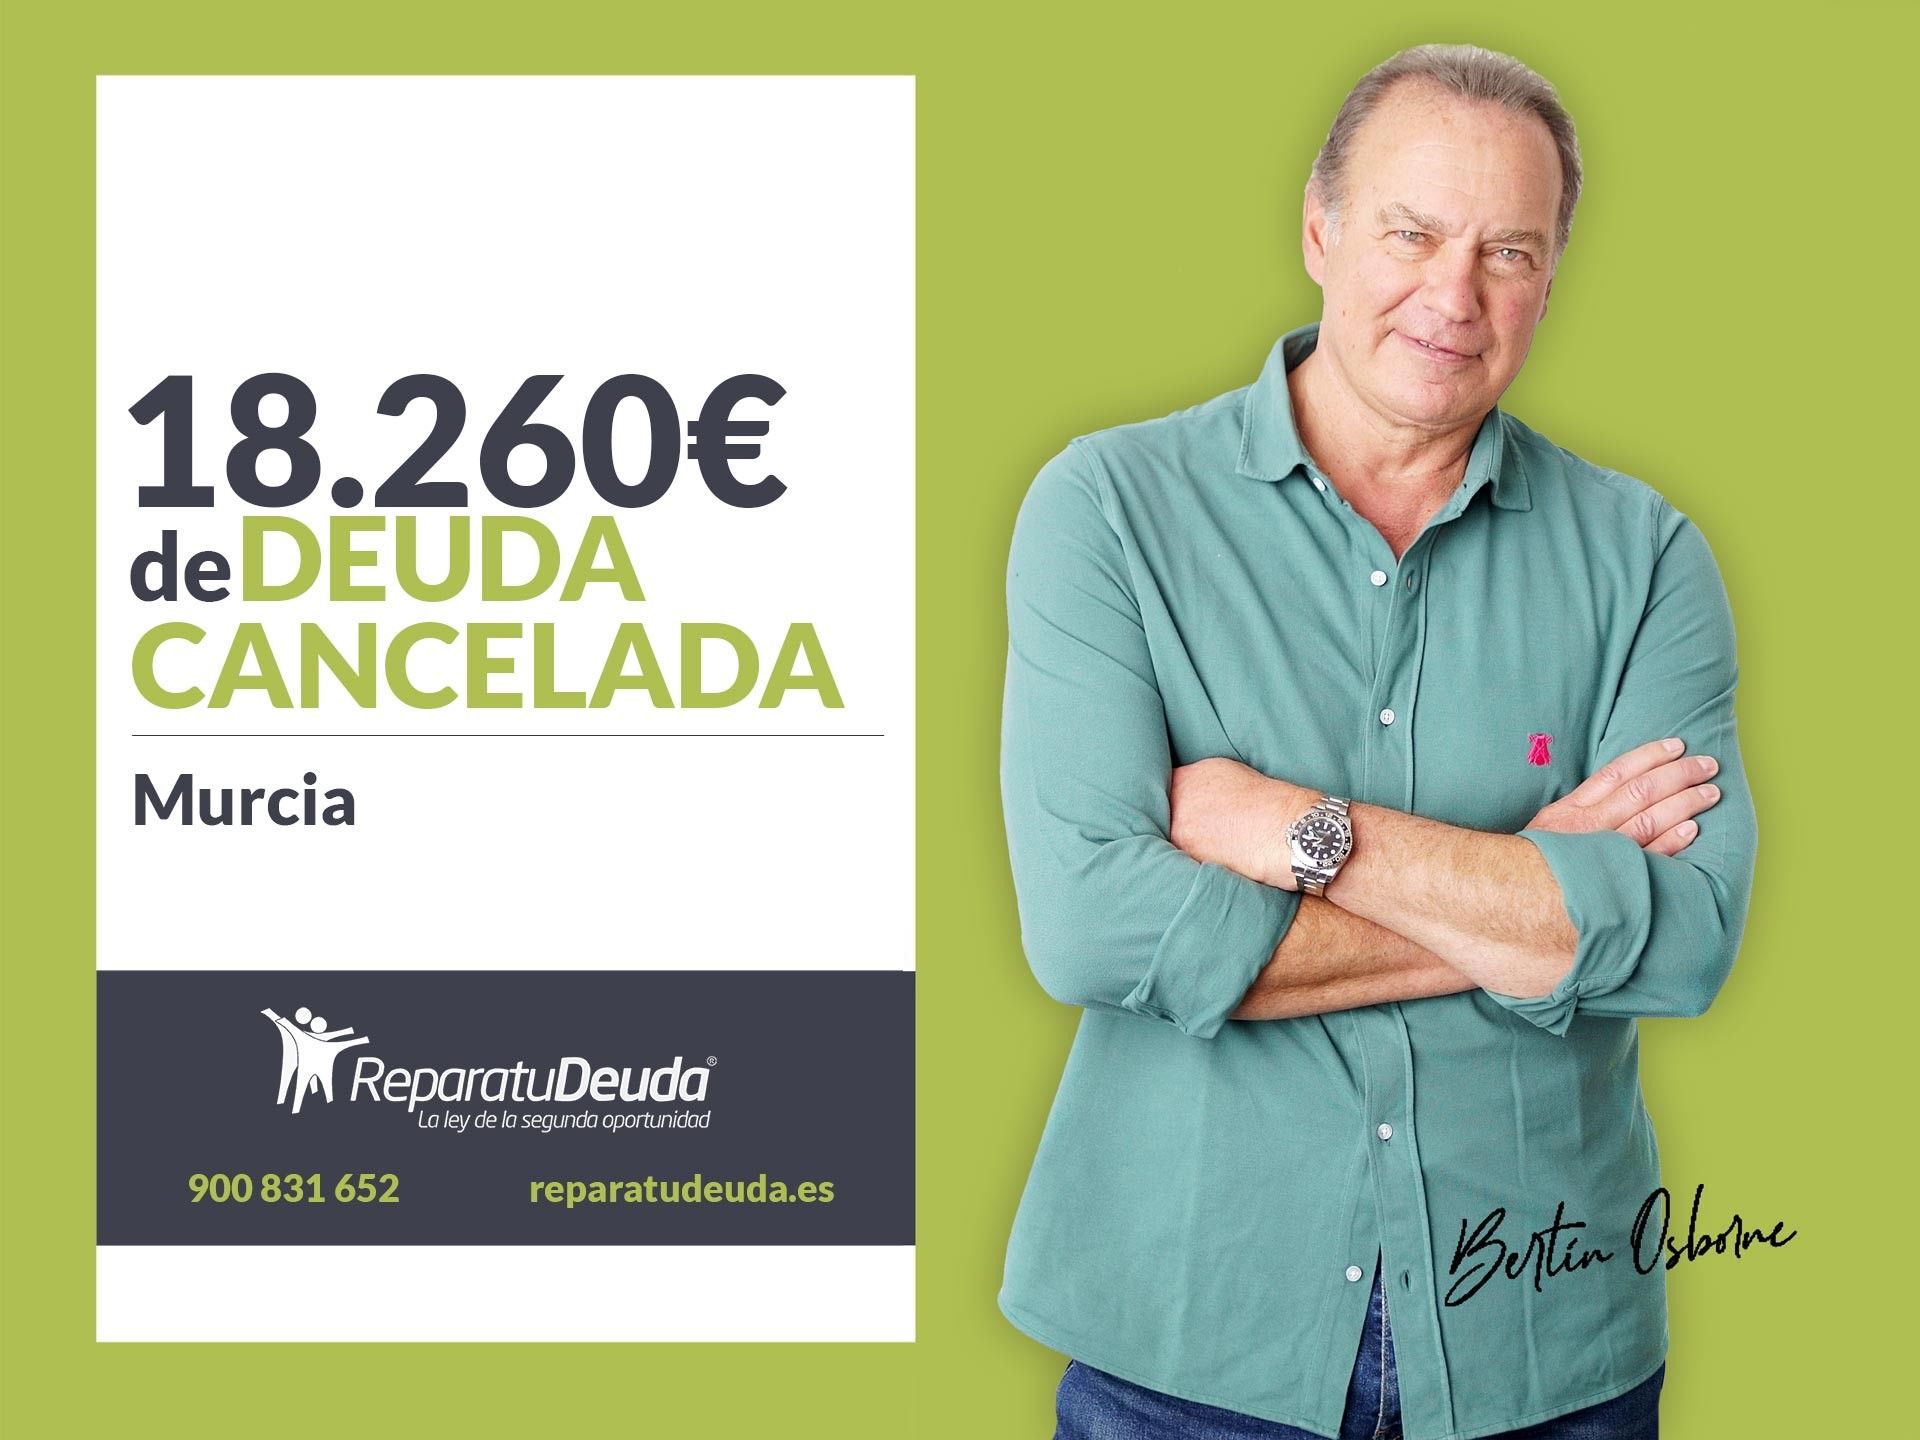 Repara tu Deuda Abogados cancela 18.260 ? en Murcia con la Ley de Segunda Oportunidad